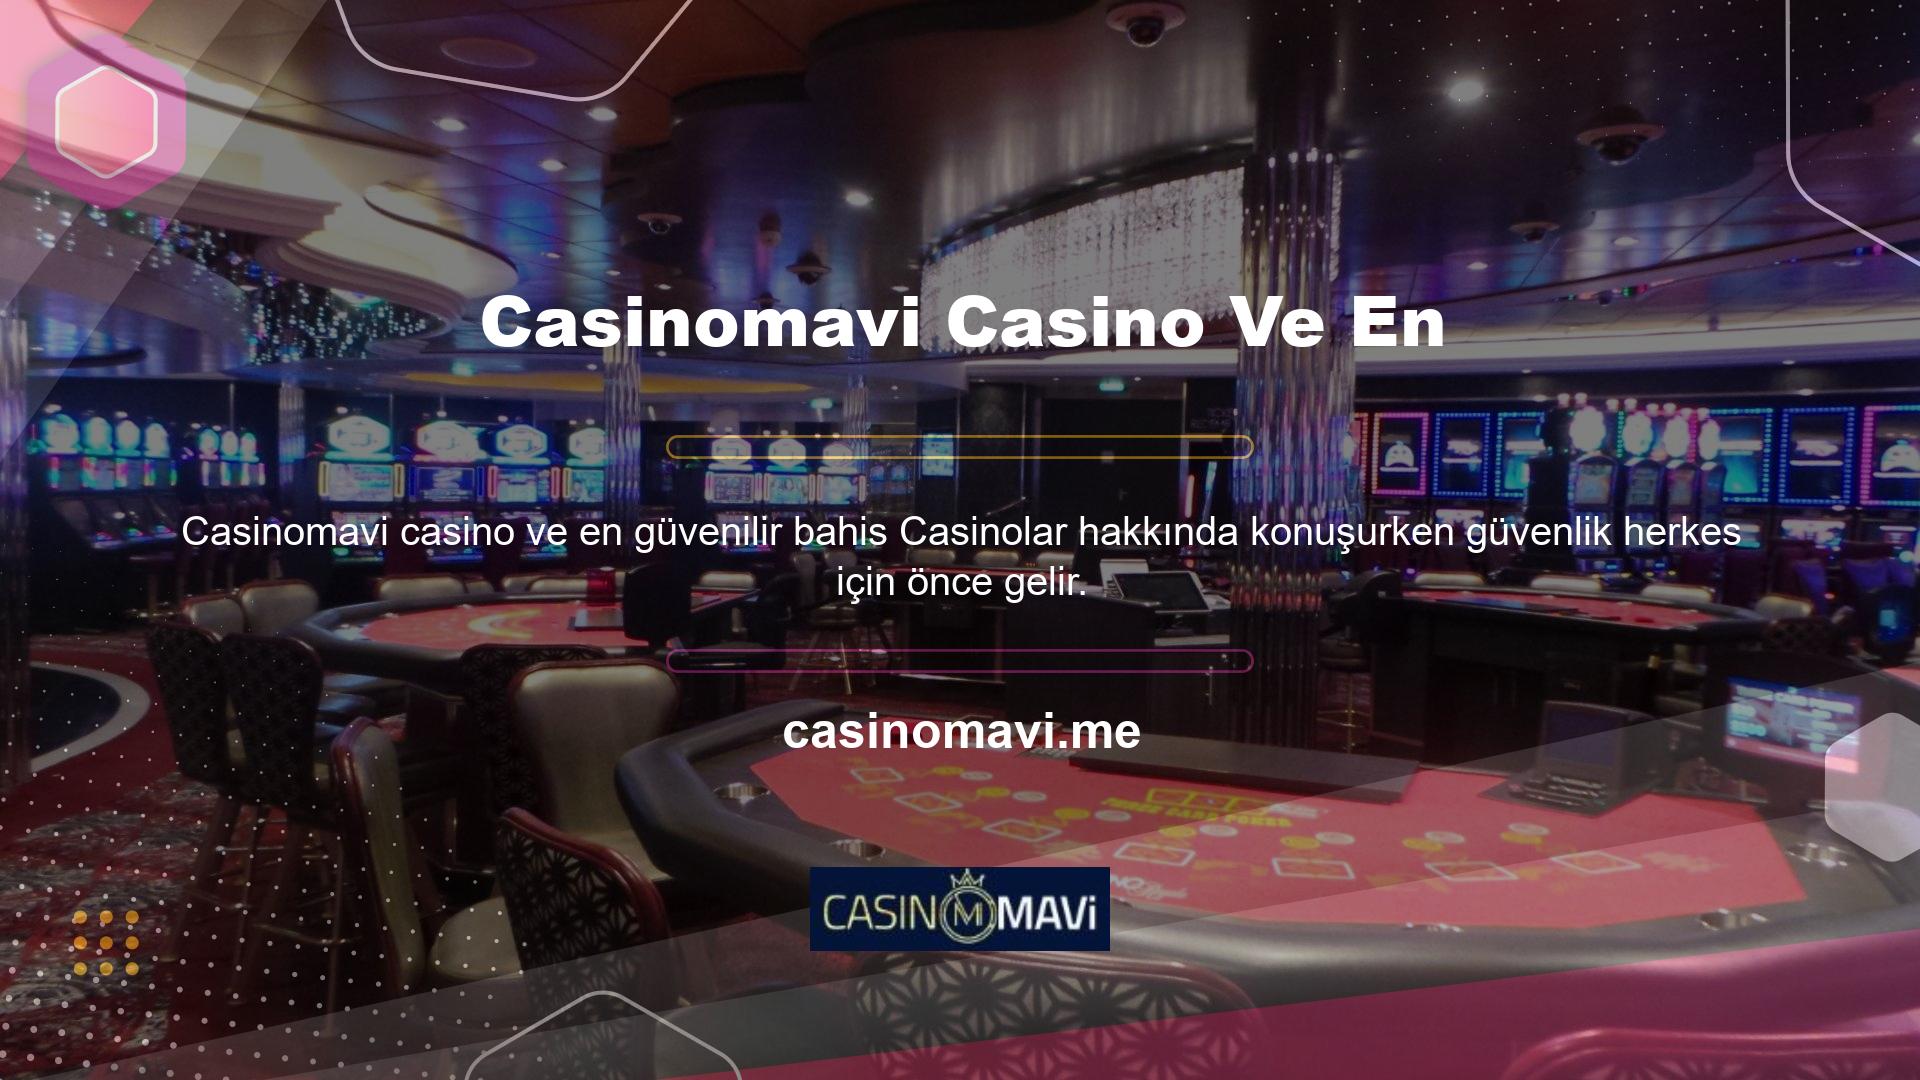 Casinomavi casino ve en basit